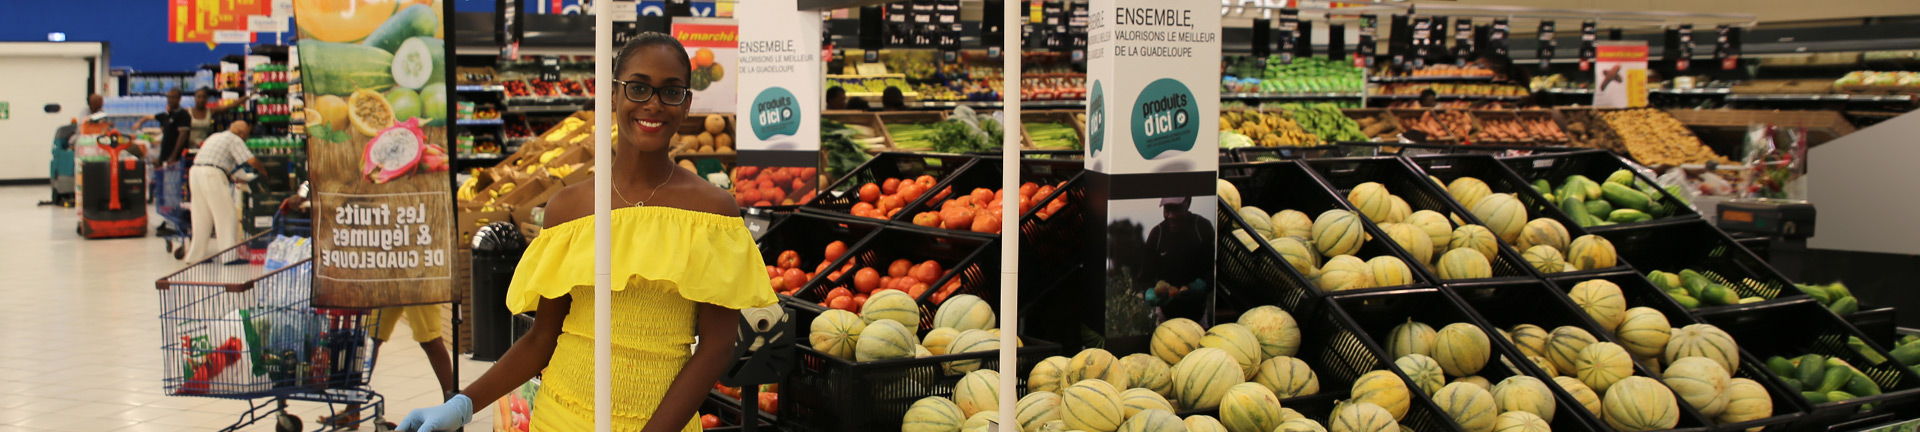 Femme devant des rayons de fruits et légumes locaux dans un supermarché 